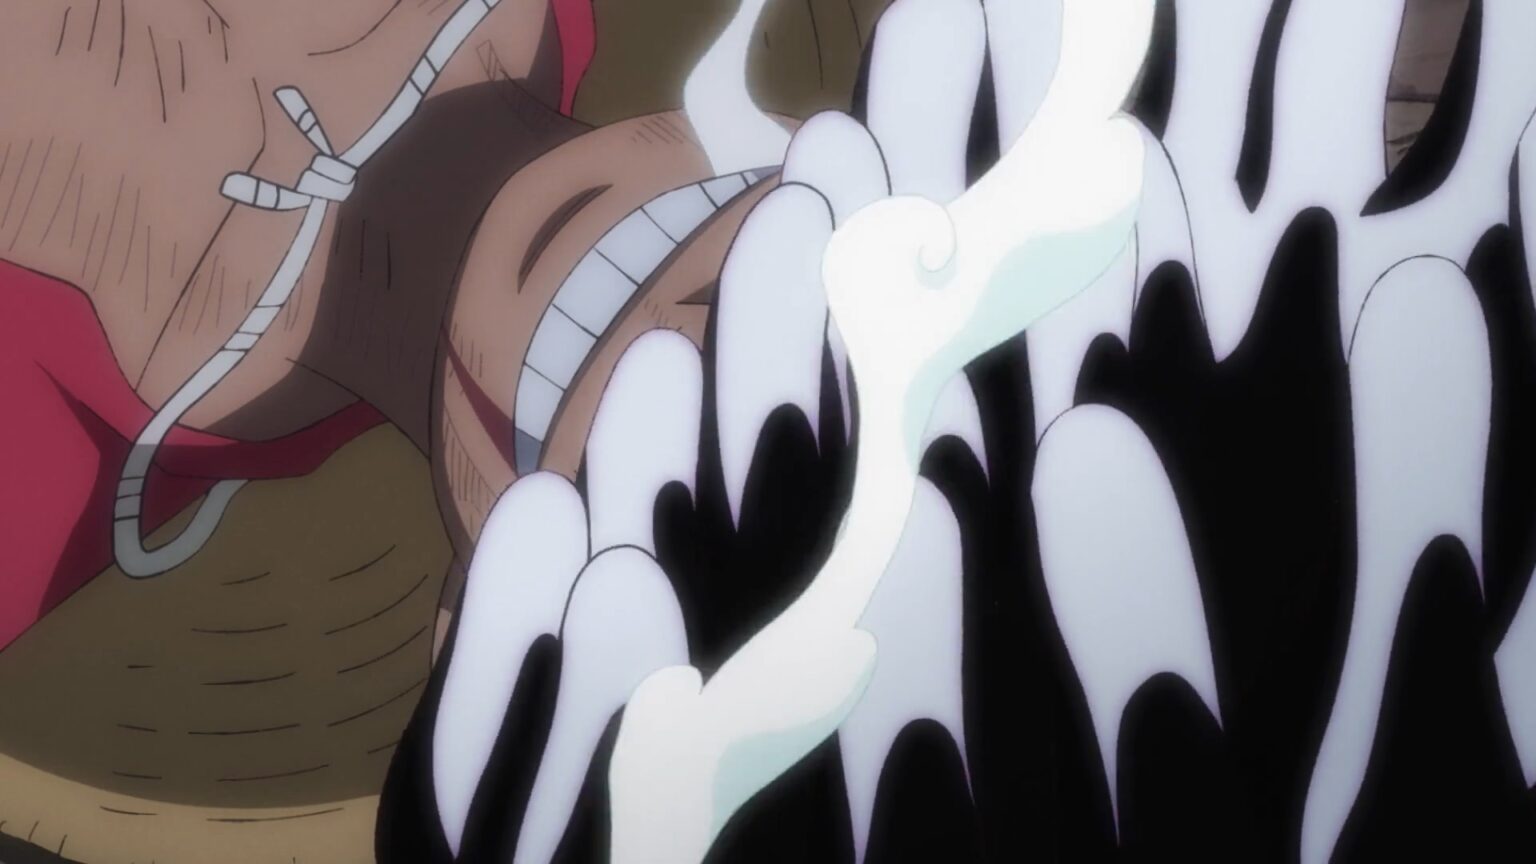 One Piece 1070 Luffy awakening as Joyboy with Gear 5